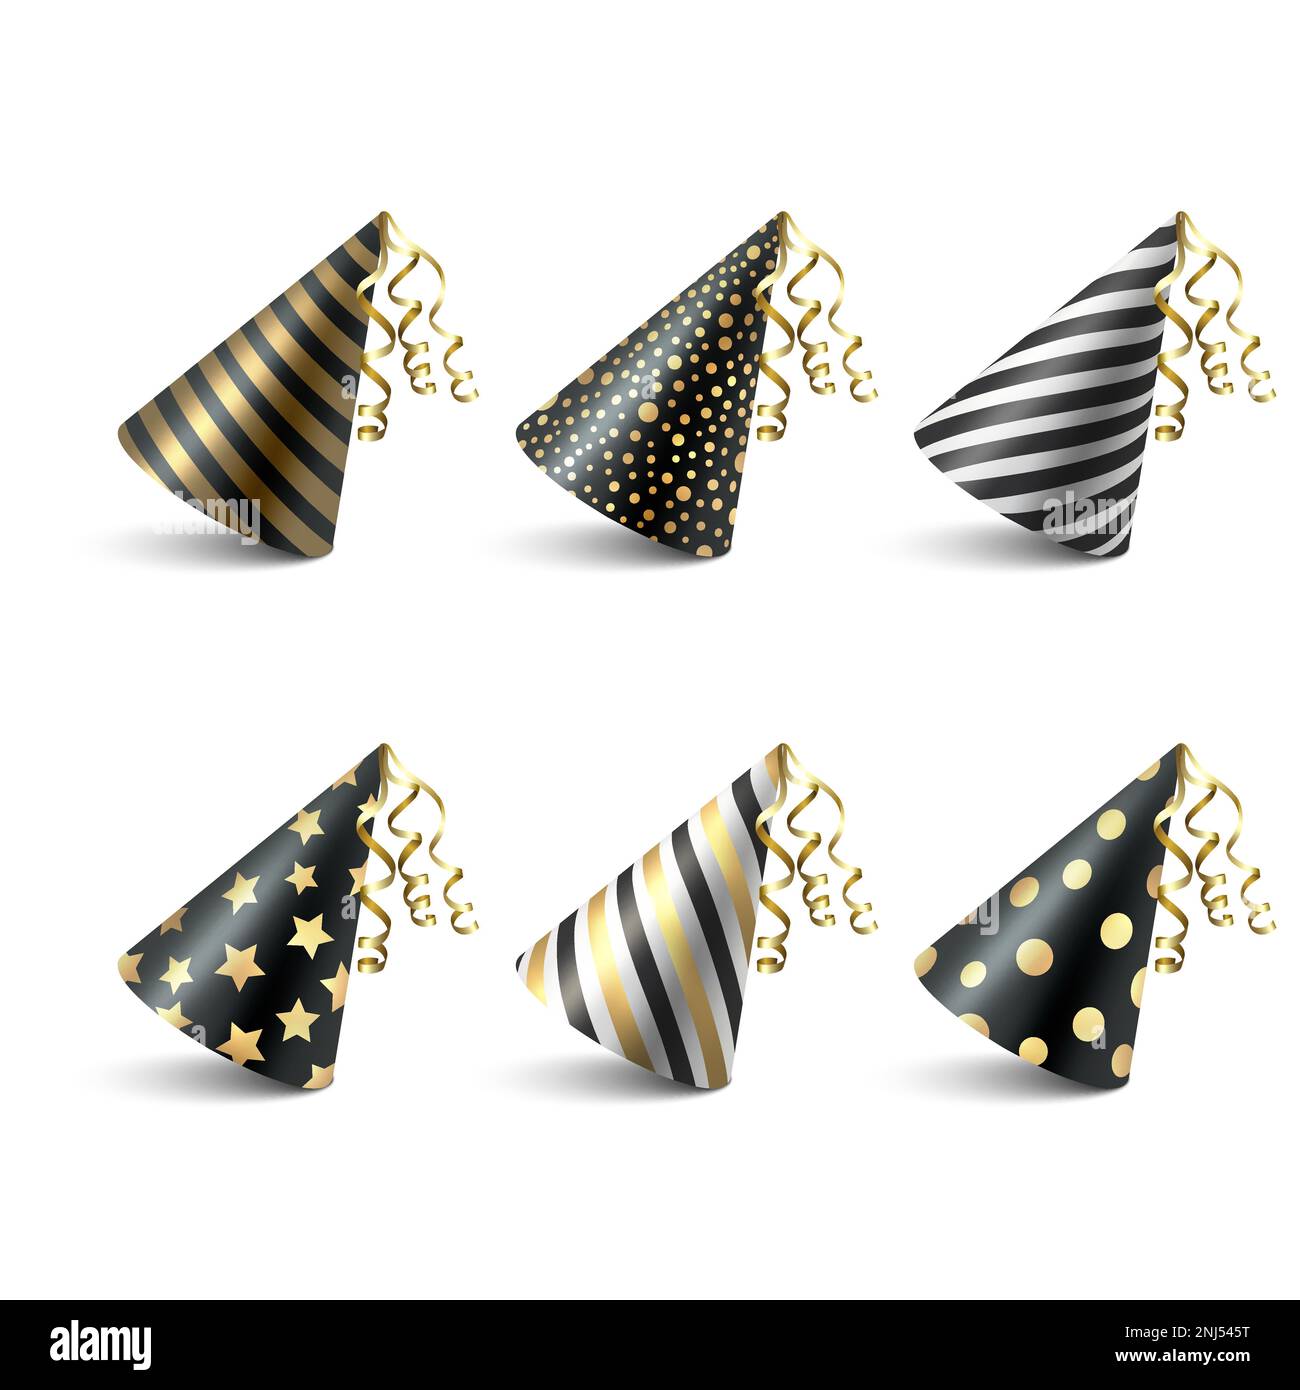 Ensemble d'icônes de chapeau d'anniversaire Vector 3D Realistic Black and Golden, isolé sur fond blanc. Modèle de création de plafond de fête pour la bannière de fête, le message d'accueil Illustration de Vecteur